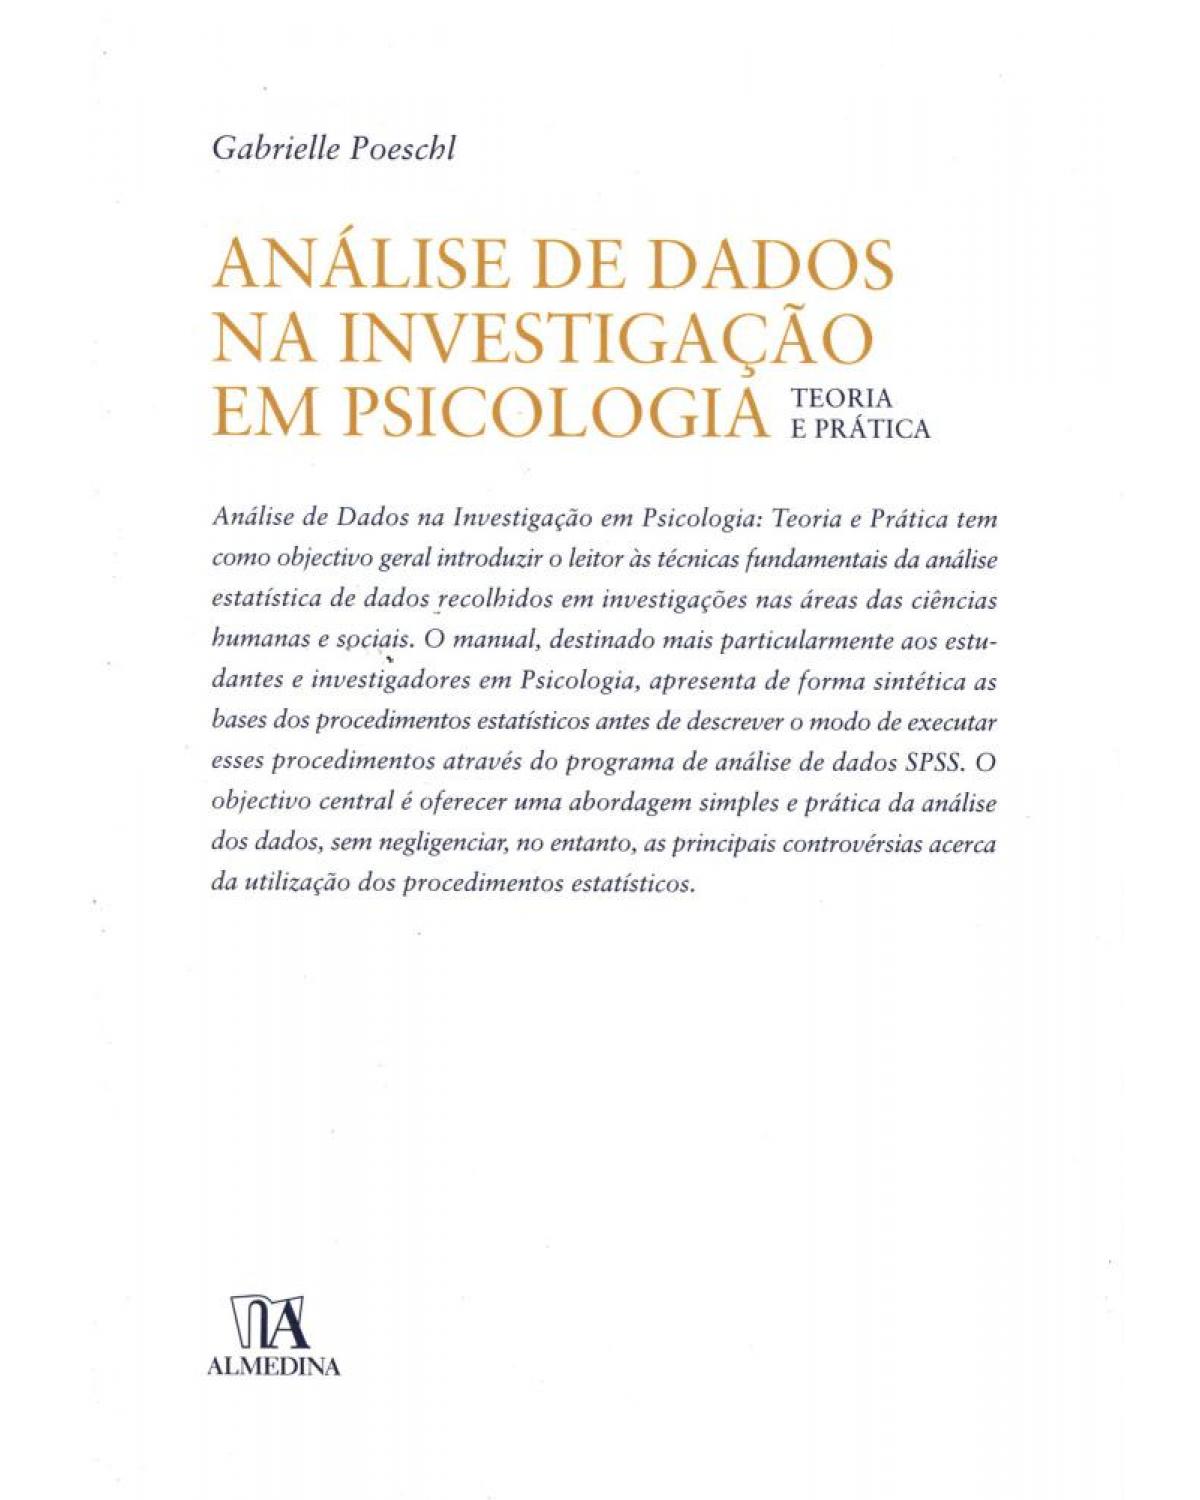 Análise de dados na investigação em psicologia - teoria e prática - 1ª Edição | 2006